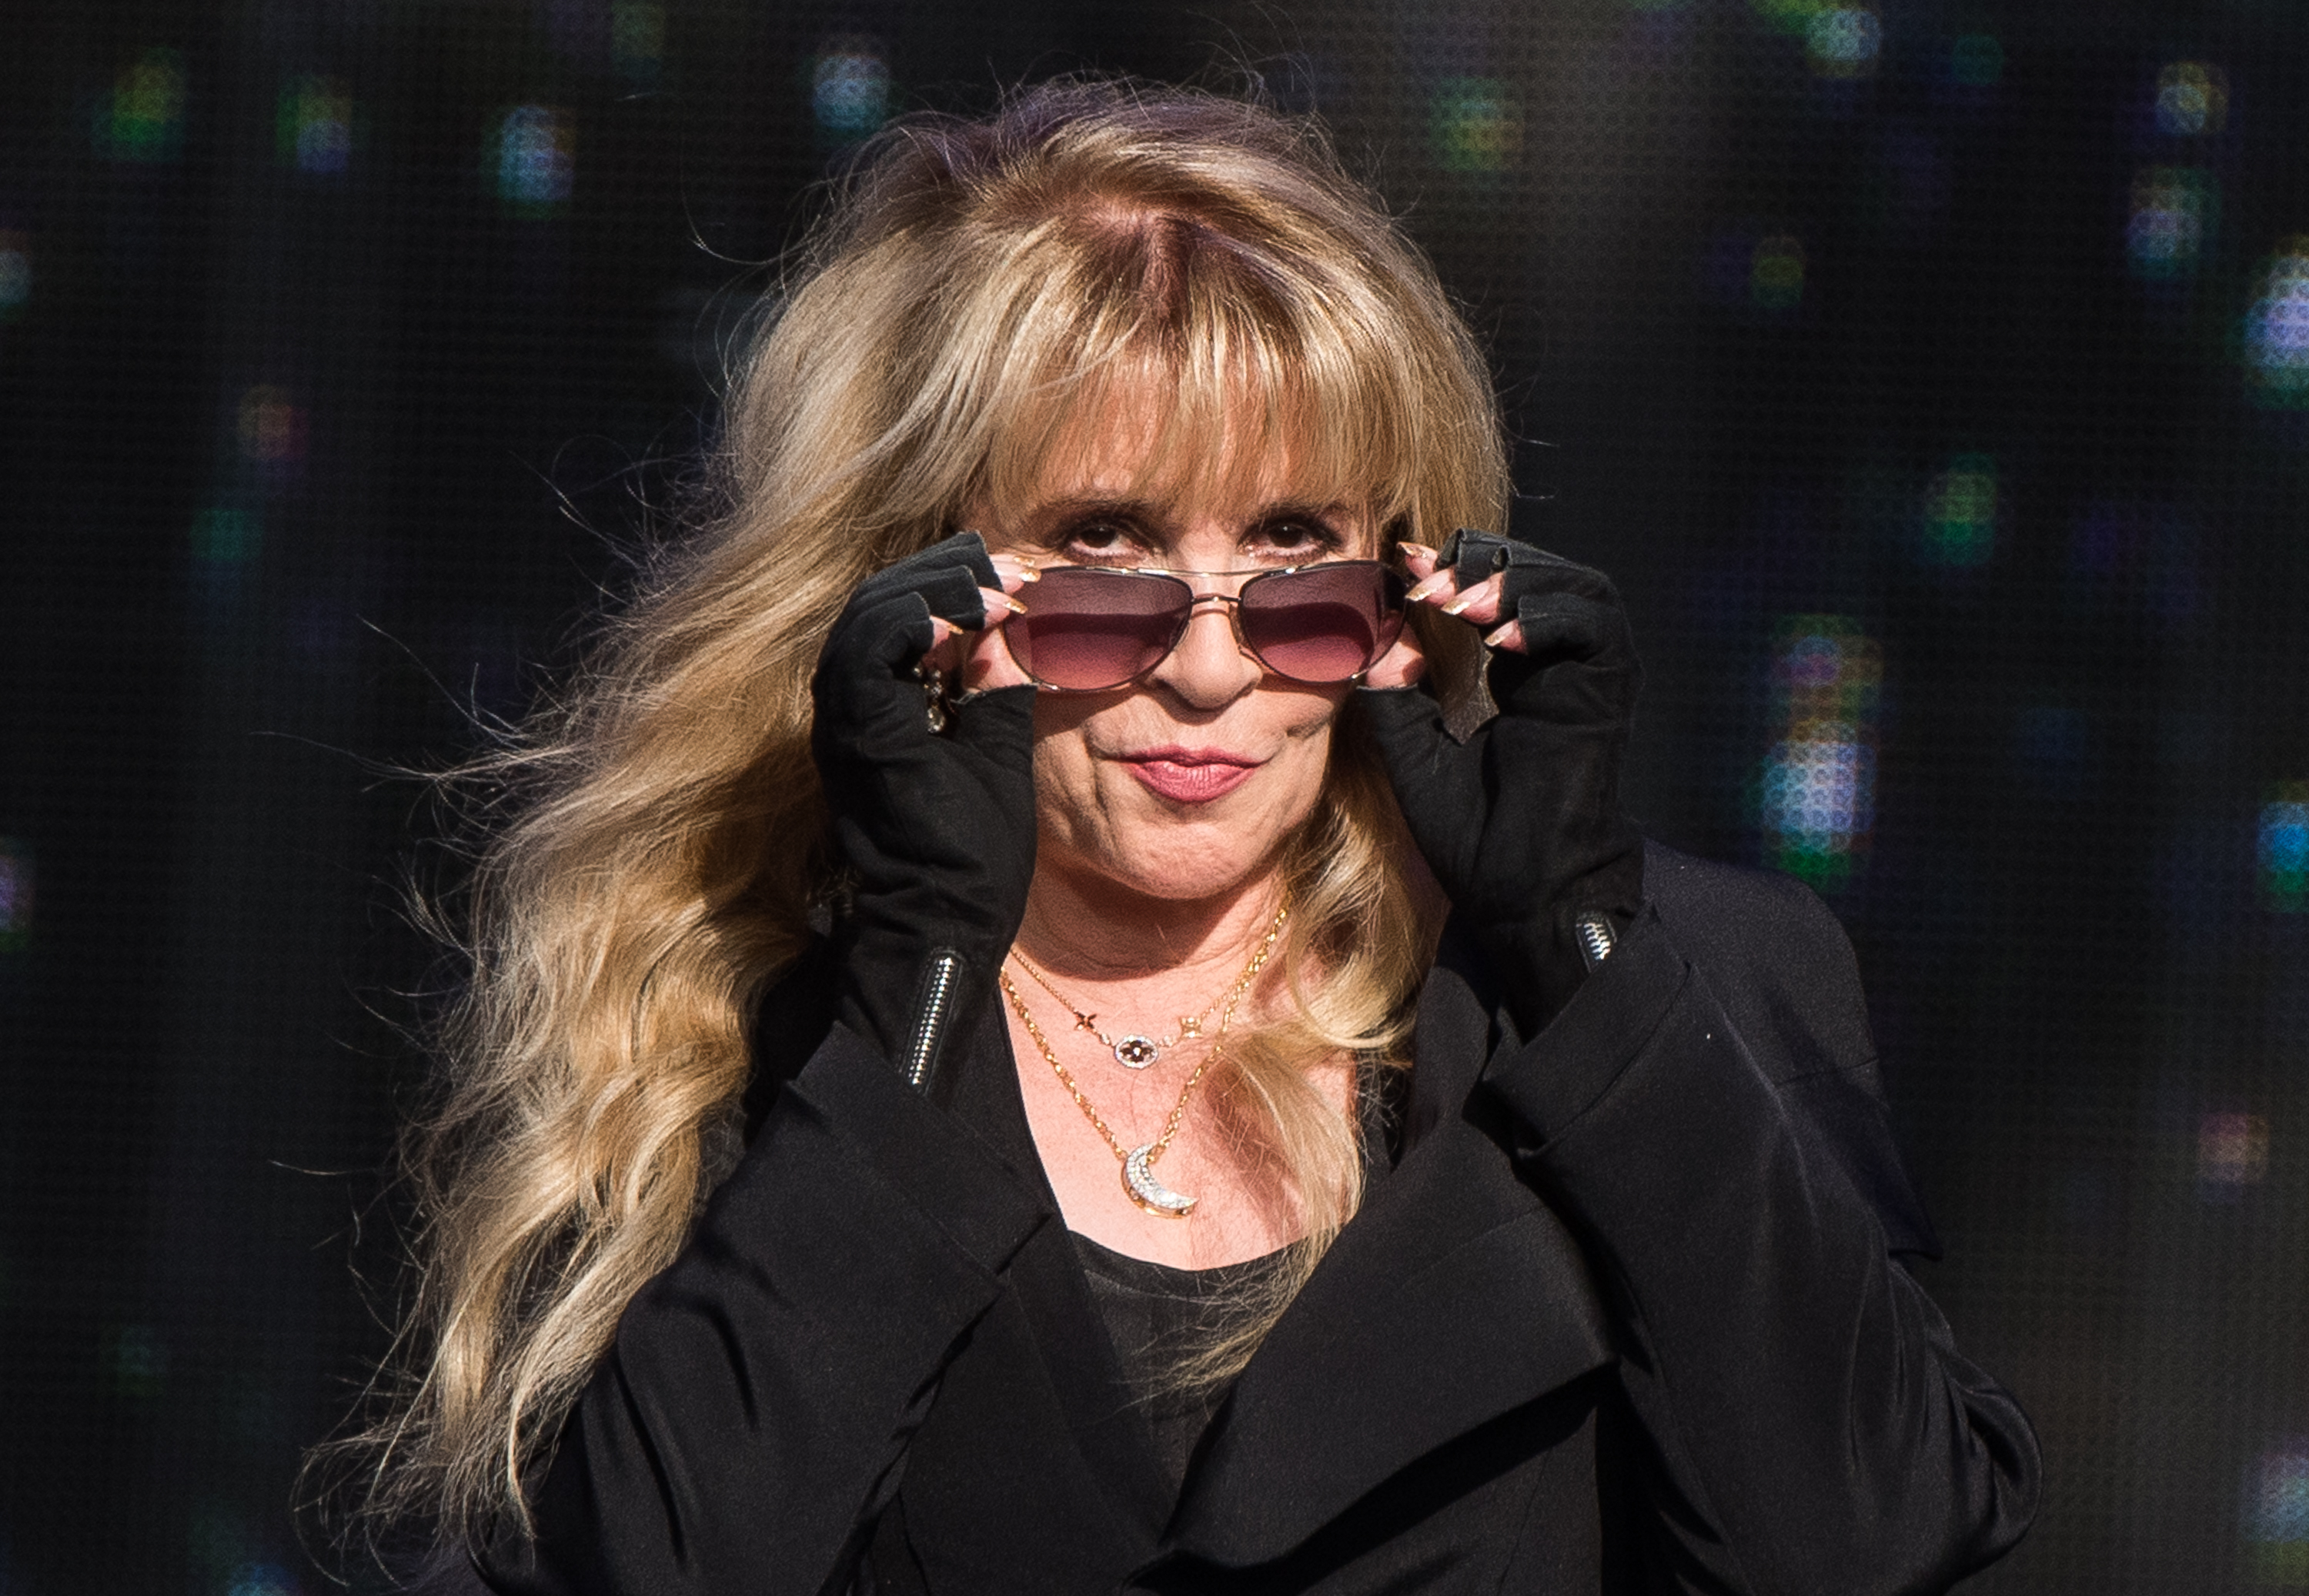 Stevie Nicks wears a black dress, black fingerless gloves, and sunglasses.